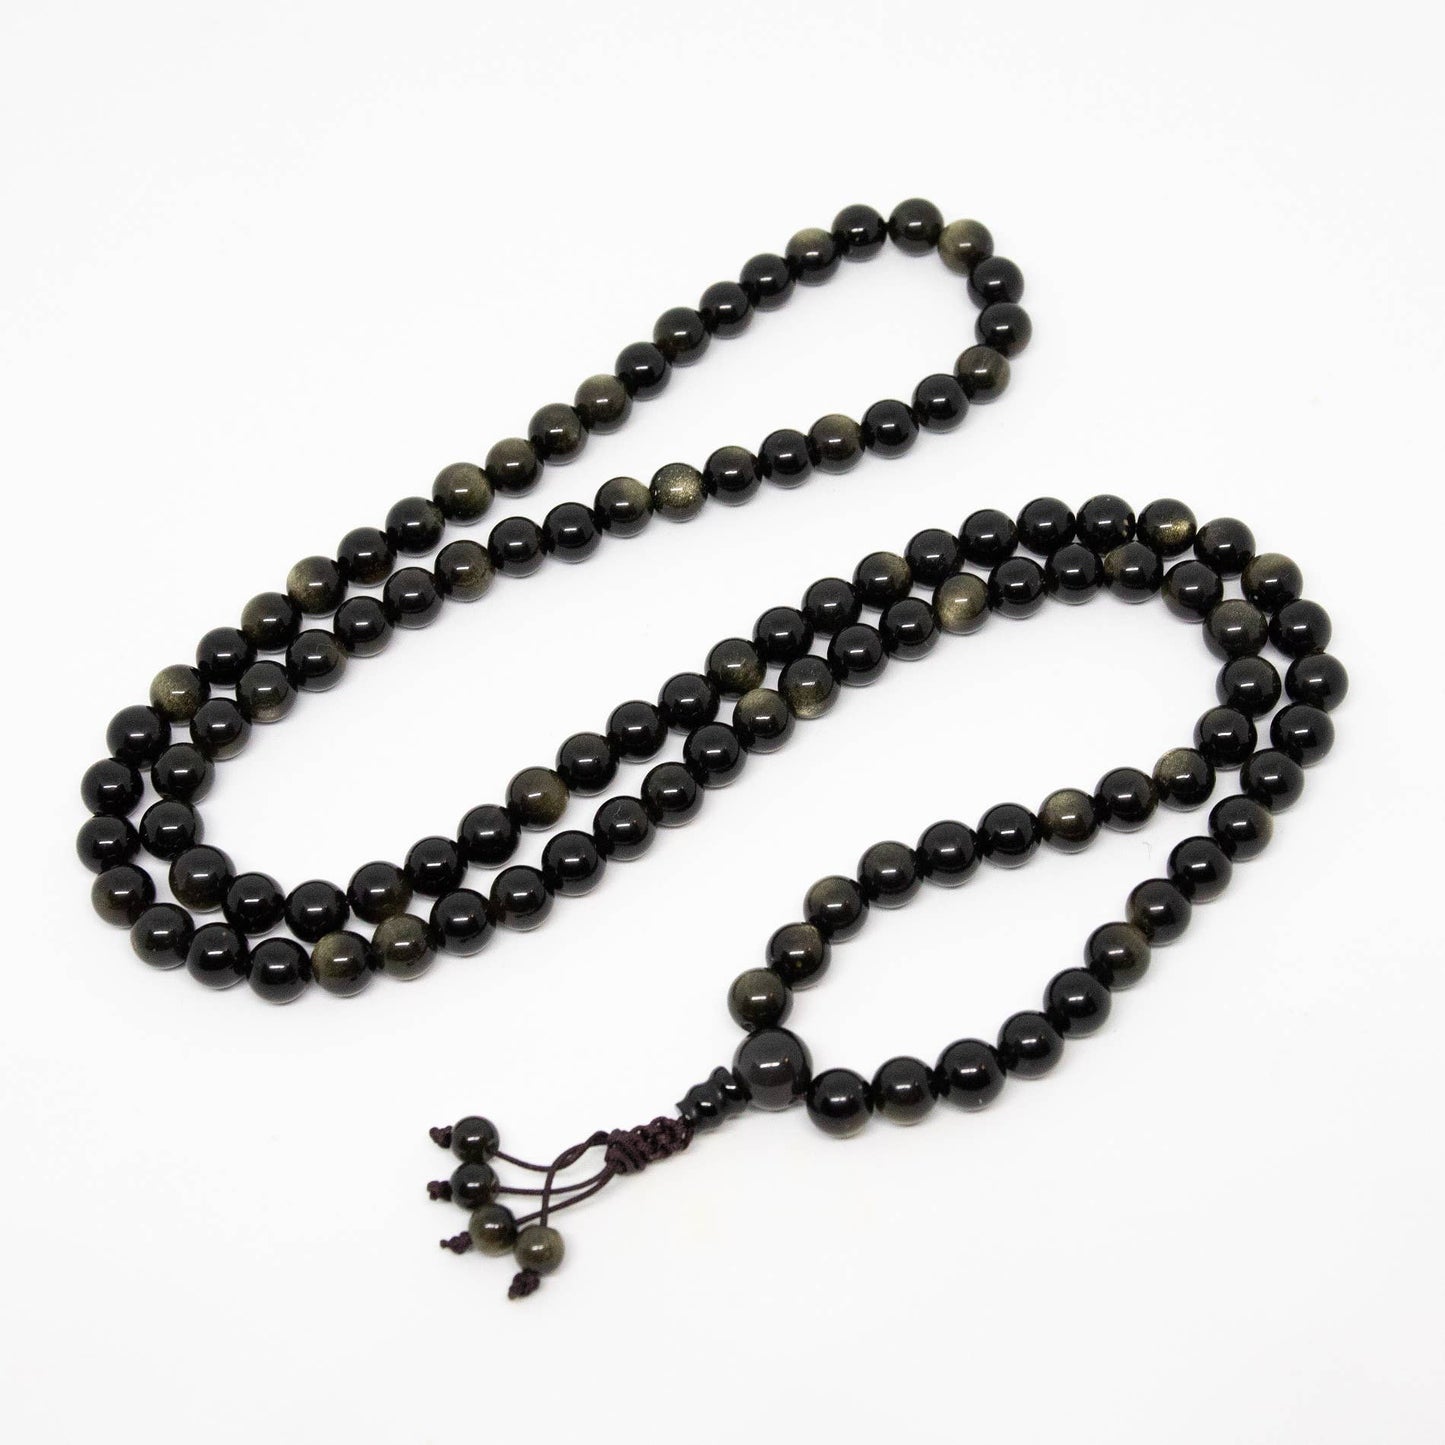 Gold Sheen Obsidian Zen 108 Bead Mala - Prayer Beads - 8mm (1 Pack)